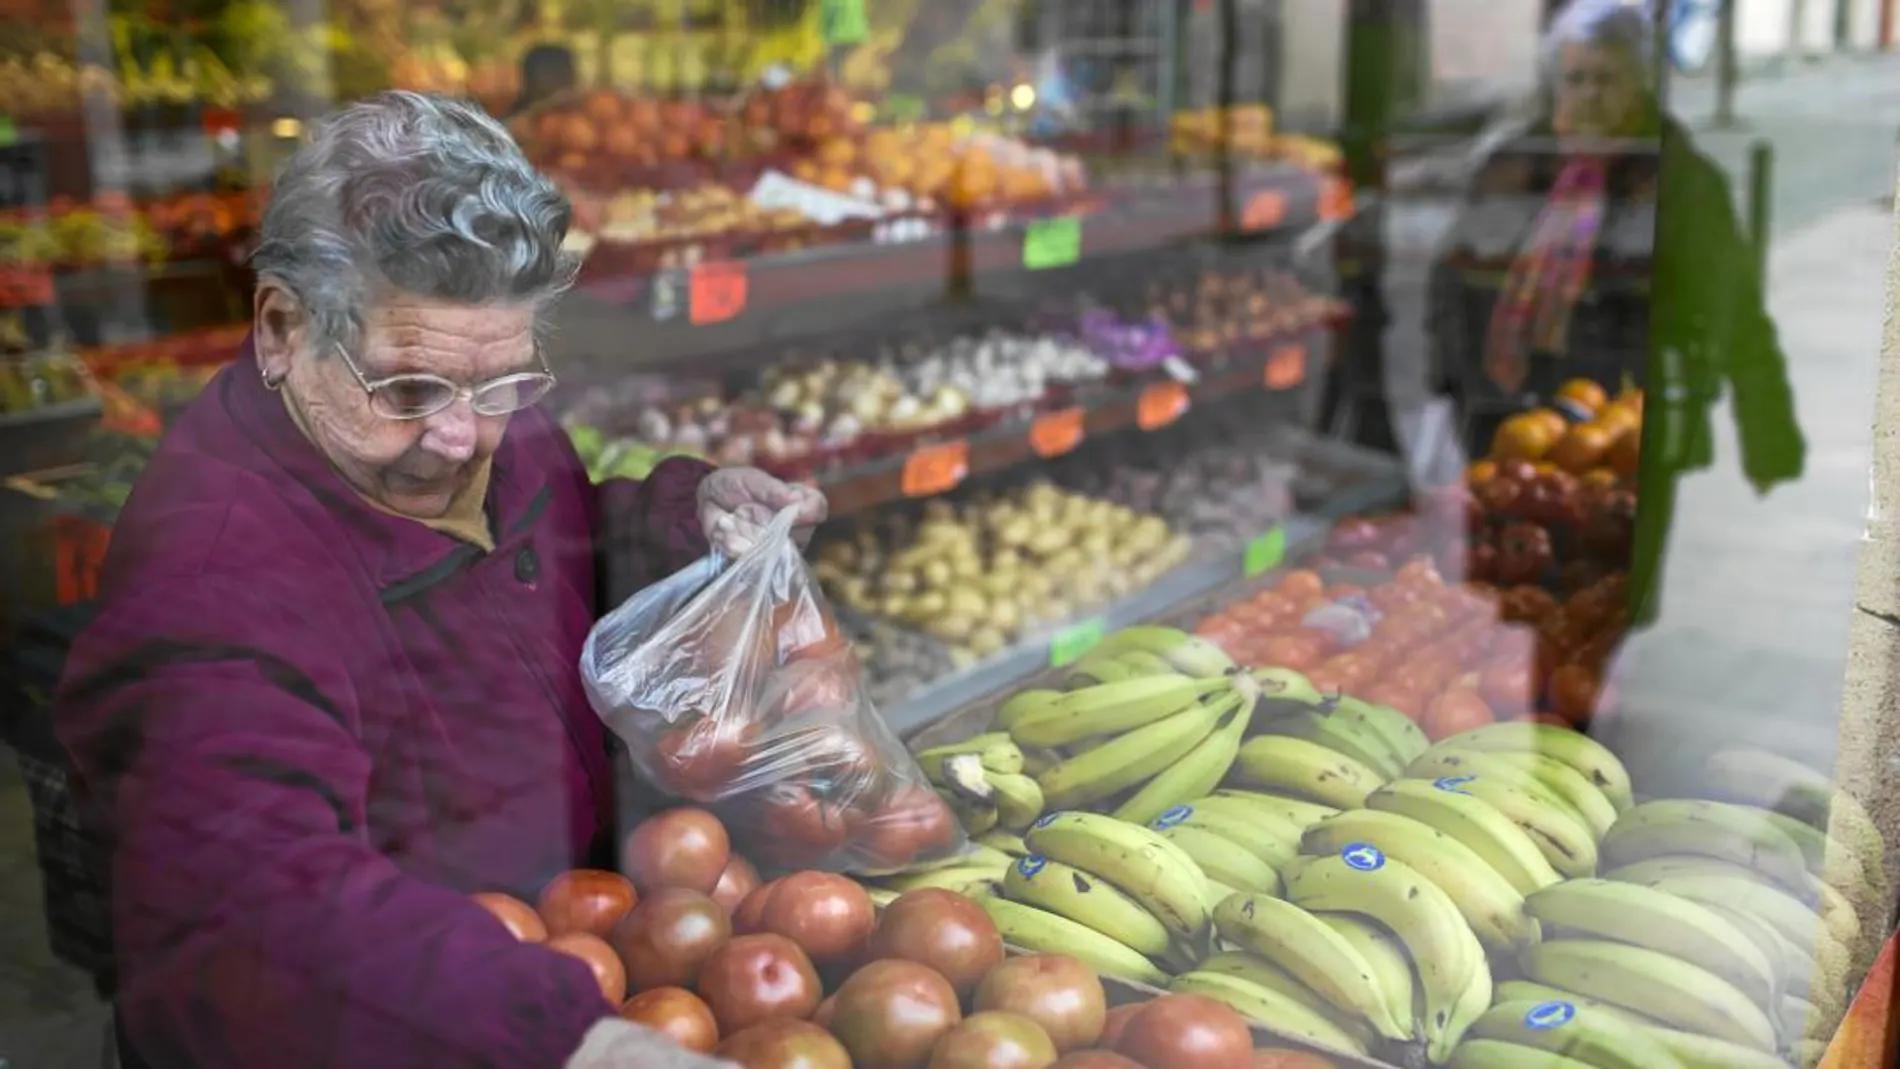 El 94 por ciento de los vecinos de Barcelona realizan sus compras habiutales de productos de alimentación en su barrio